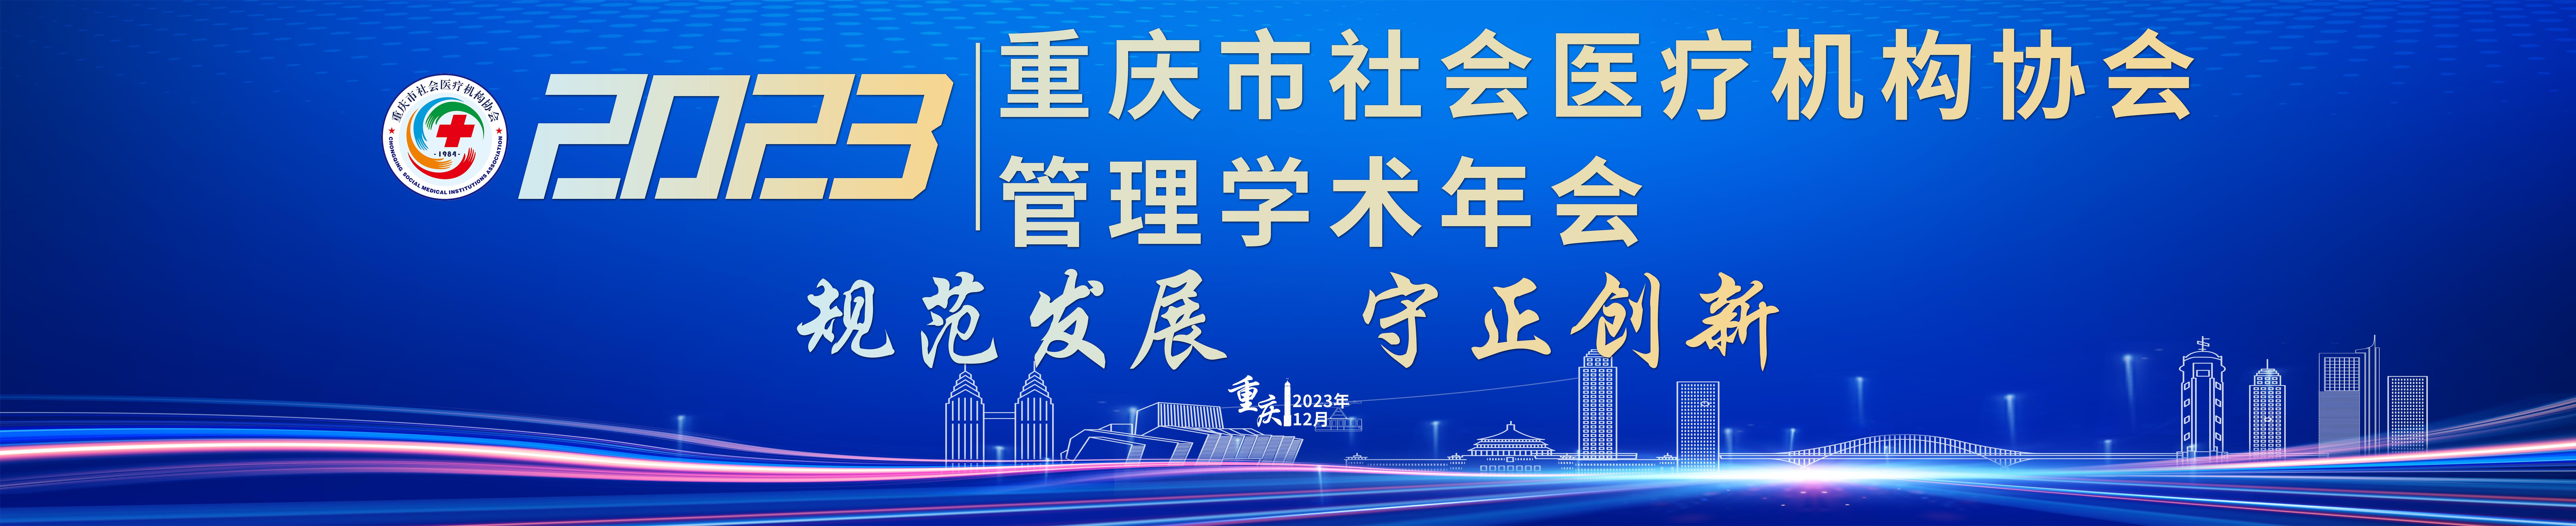 重庆市社会医疗机构协会2023年管理学术年会